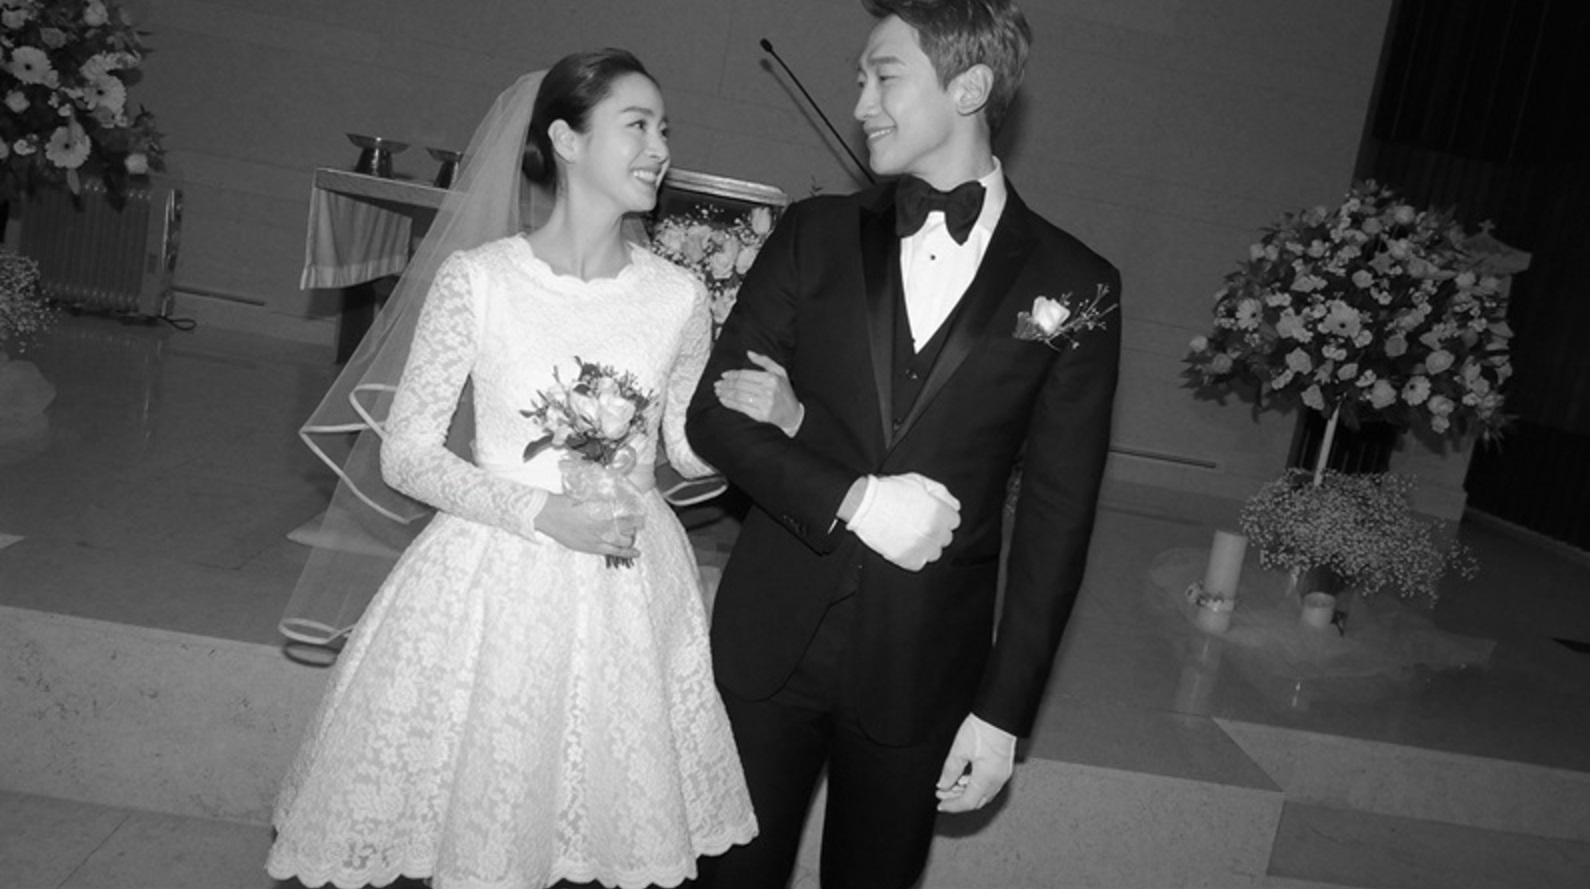 So kè váy cưới tứ đại mỹ nhân Hàn: Song Hye Kyo thất thế dù chơi lớn, Son Ye Jin đẹp không điểm trừ - Ảnh 9